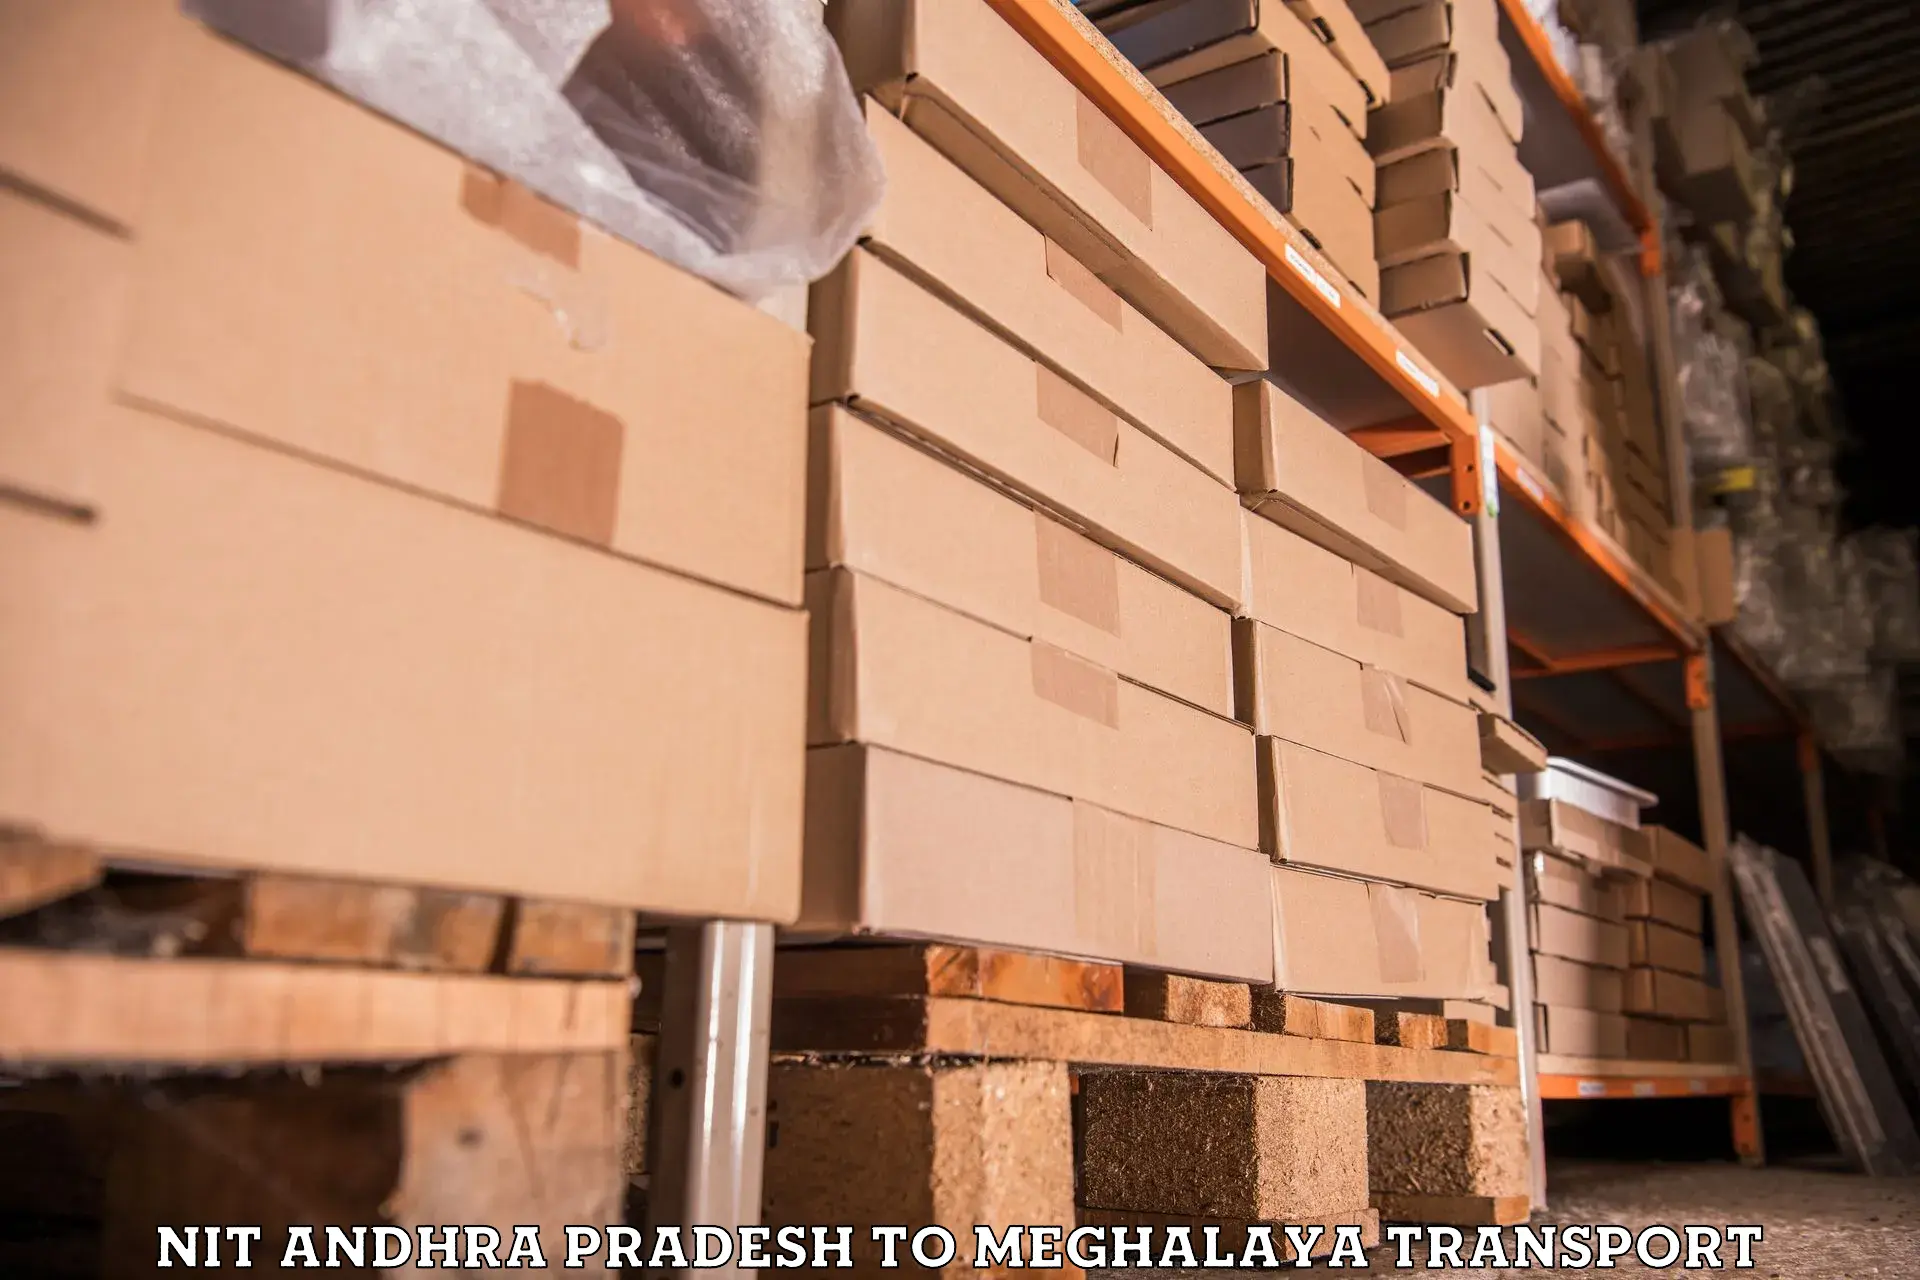 Lorry transport service NIT Andhra Pradesh to Meghalaya